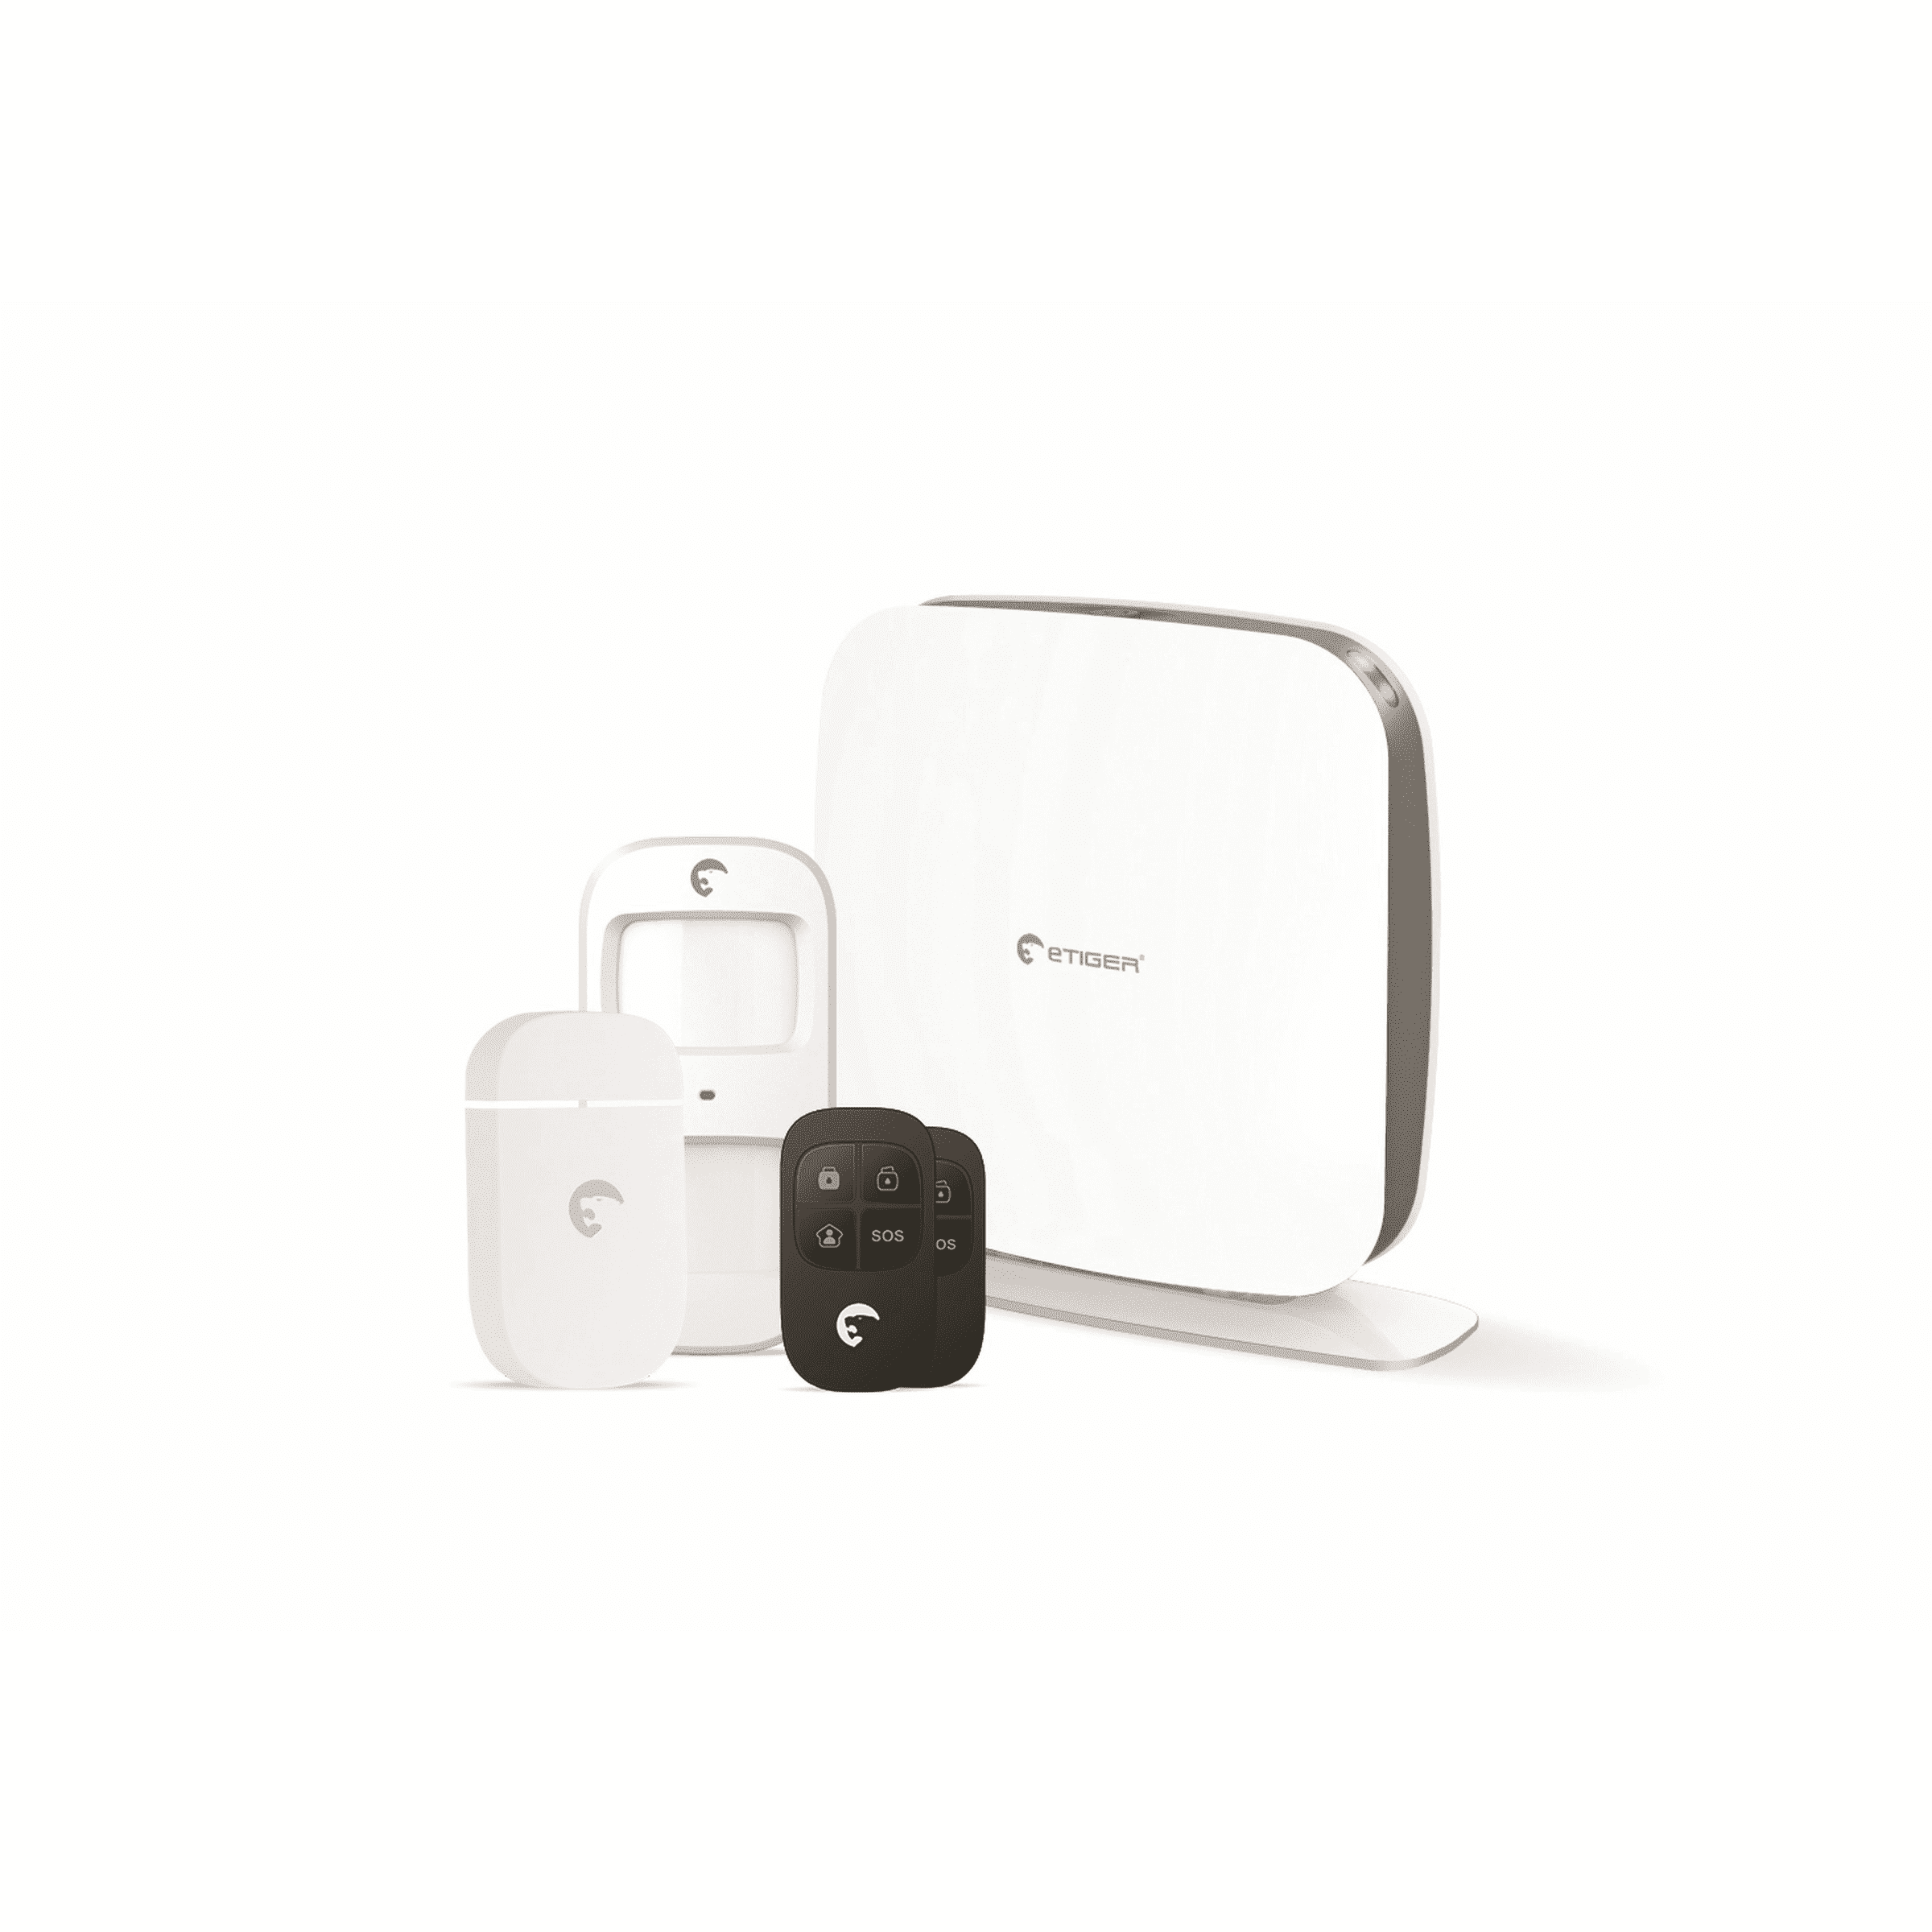 eTIGER draadloos WiFi alarmsysteem Secual Box met GSM communicatie via app voor iOS en Android en optionele SIM kaart